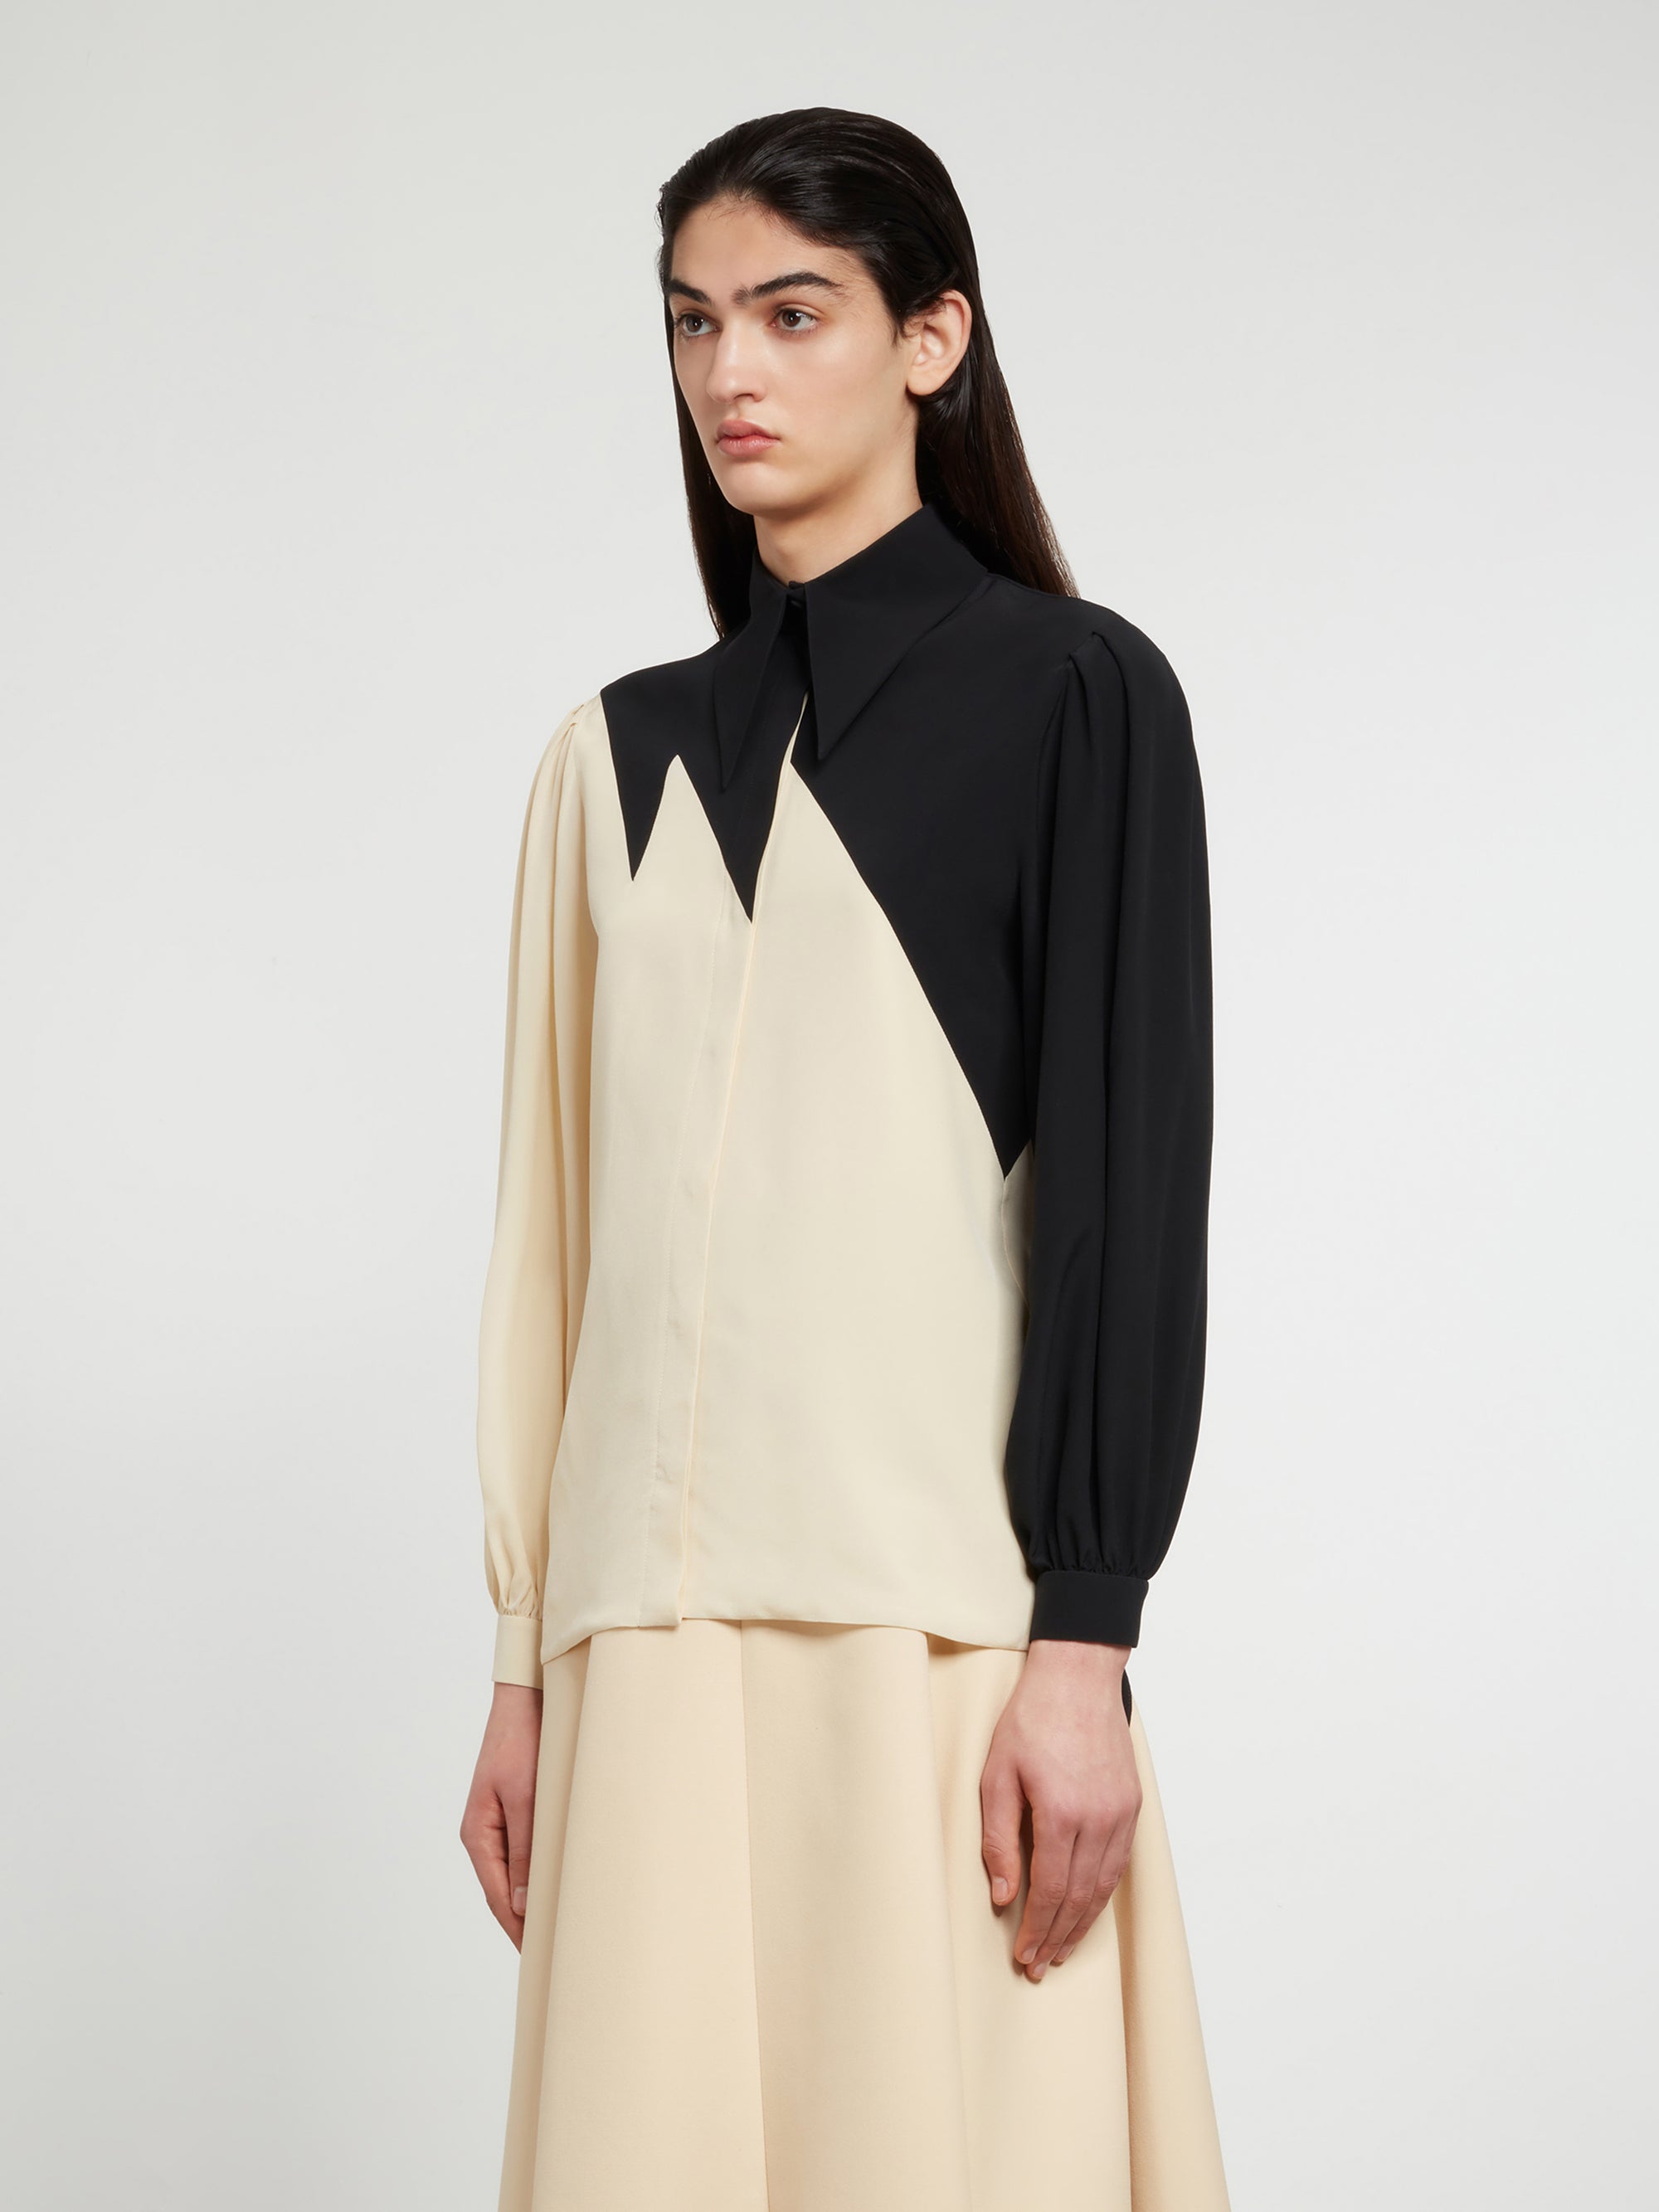 Gucci - Women’s DSM Exclusive Silk Crepe de Chine Shirt - (Black/Ivory) view 2